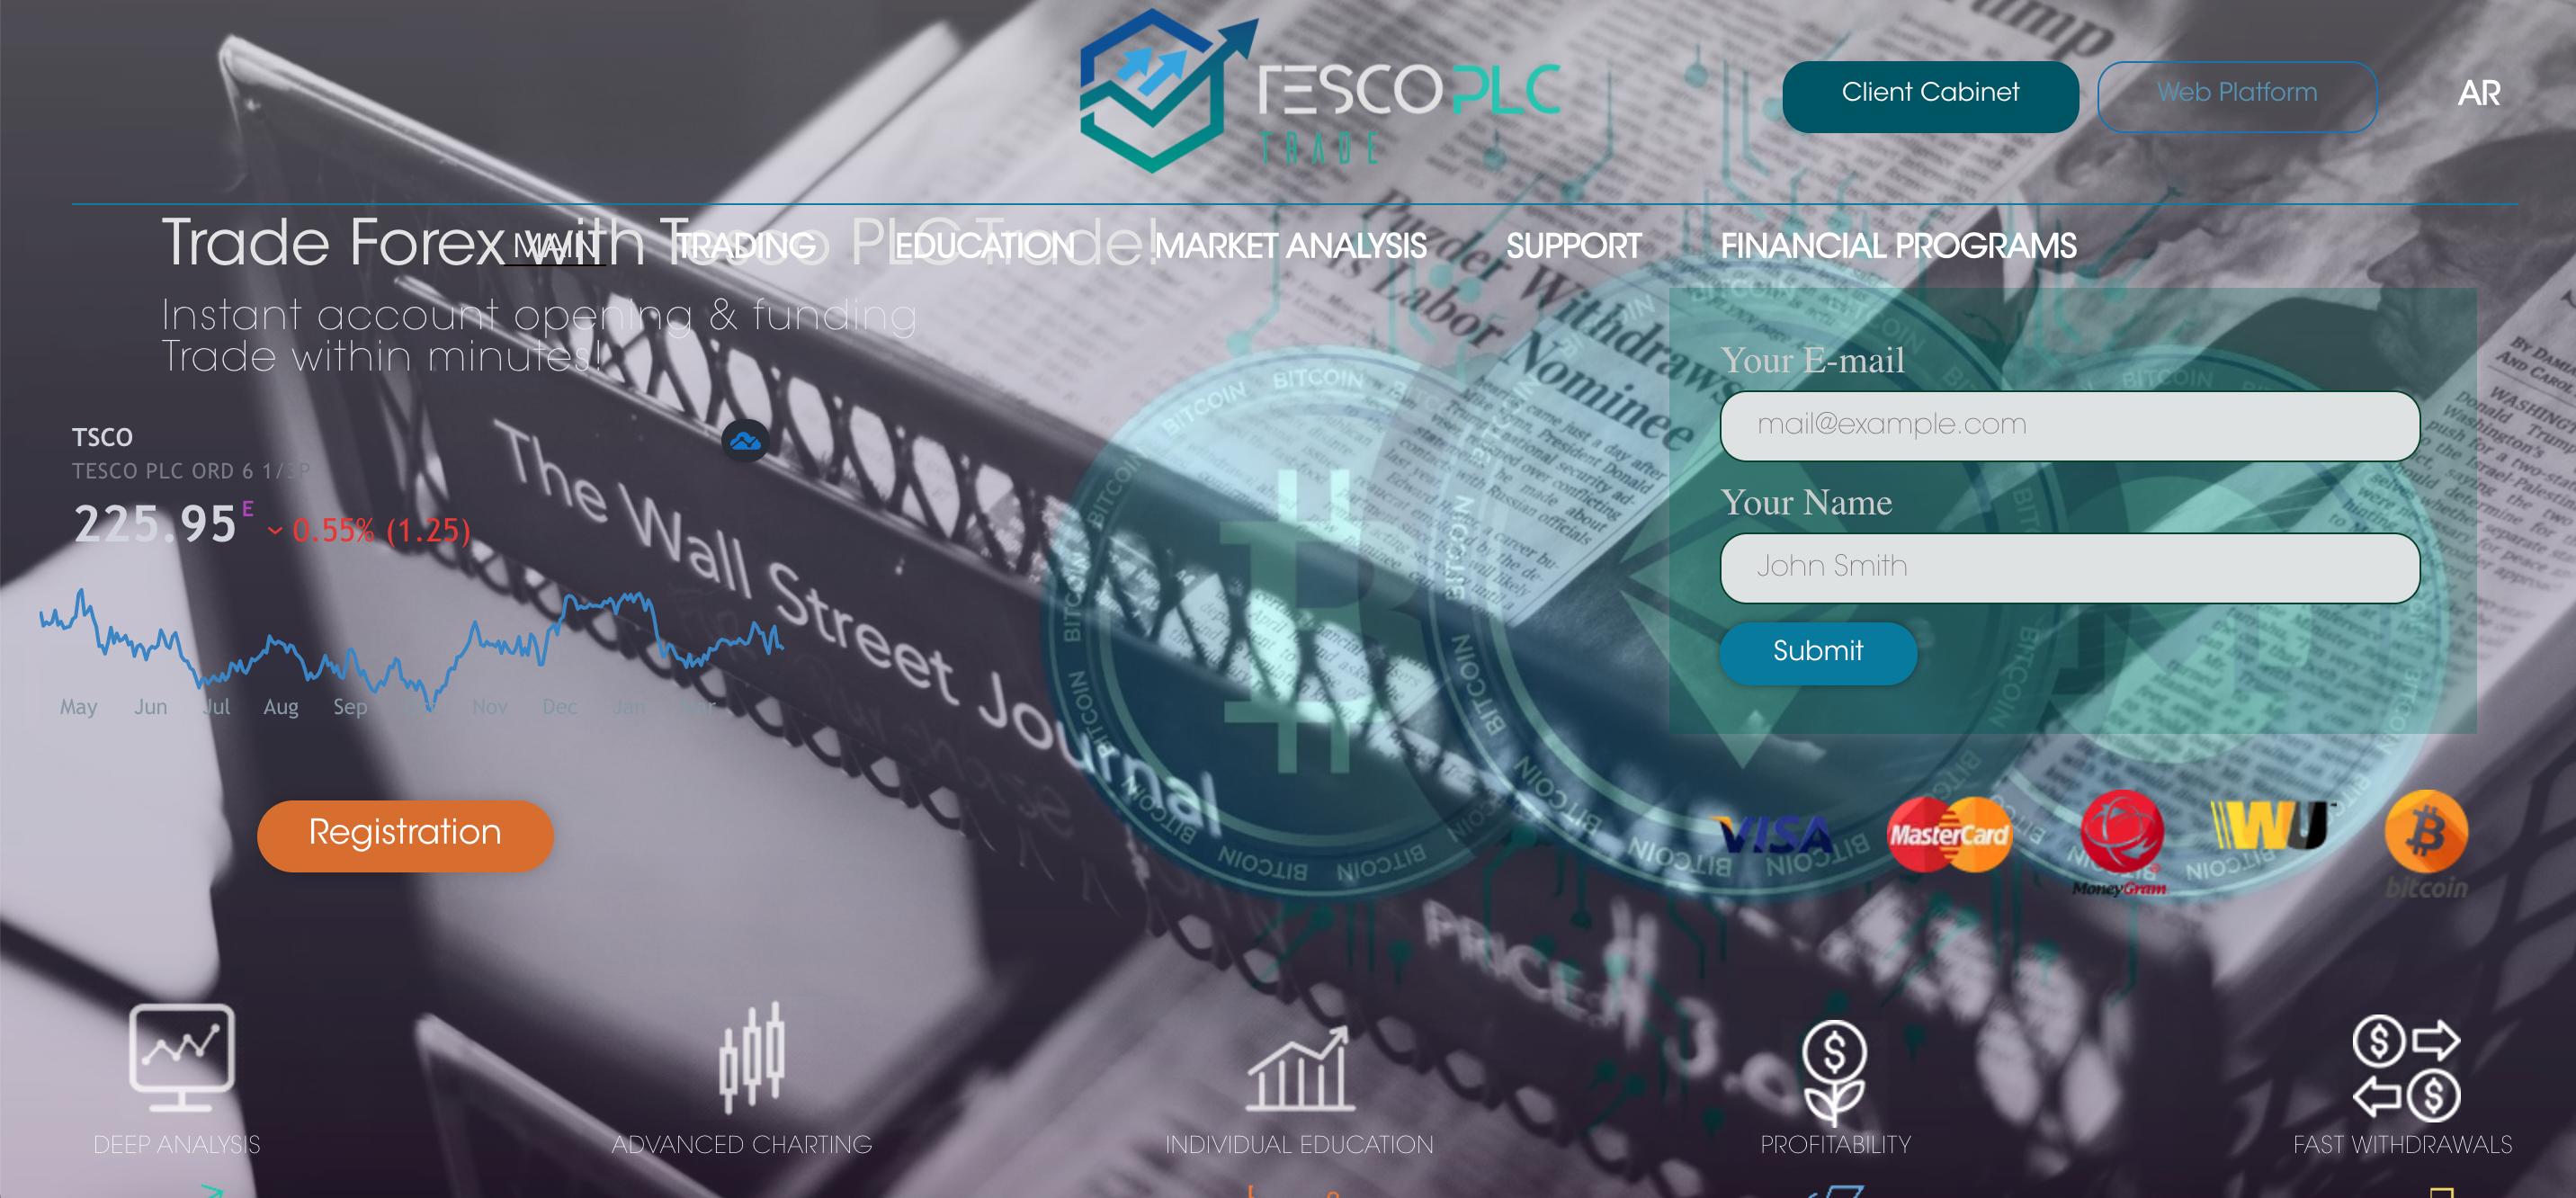 Tesco PLC Trade website